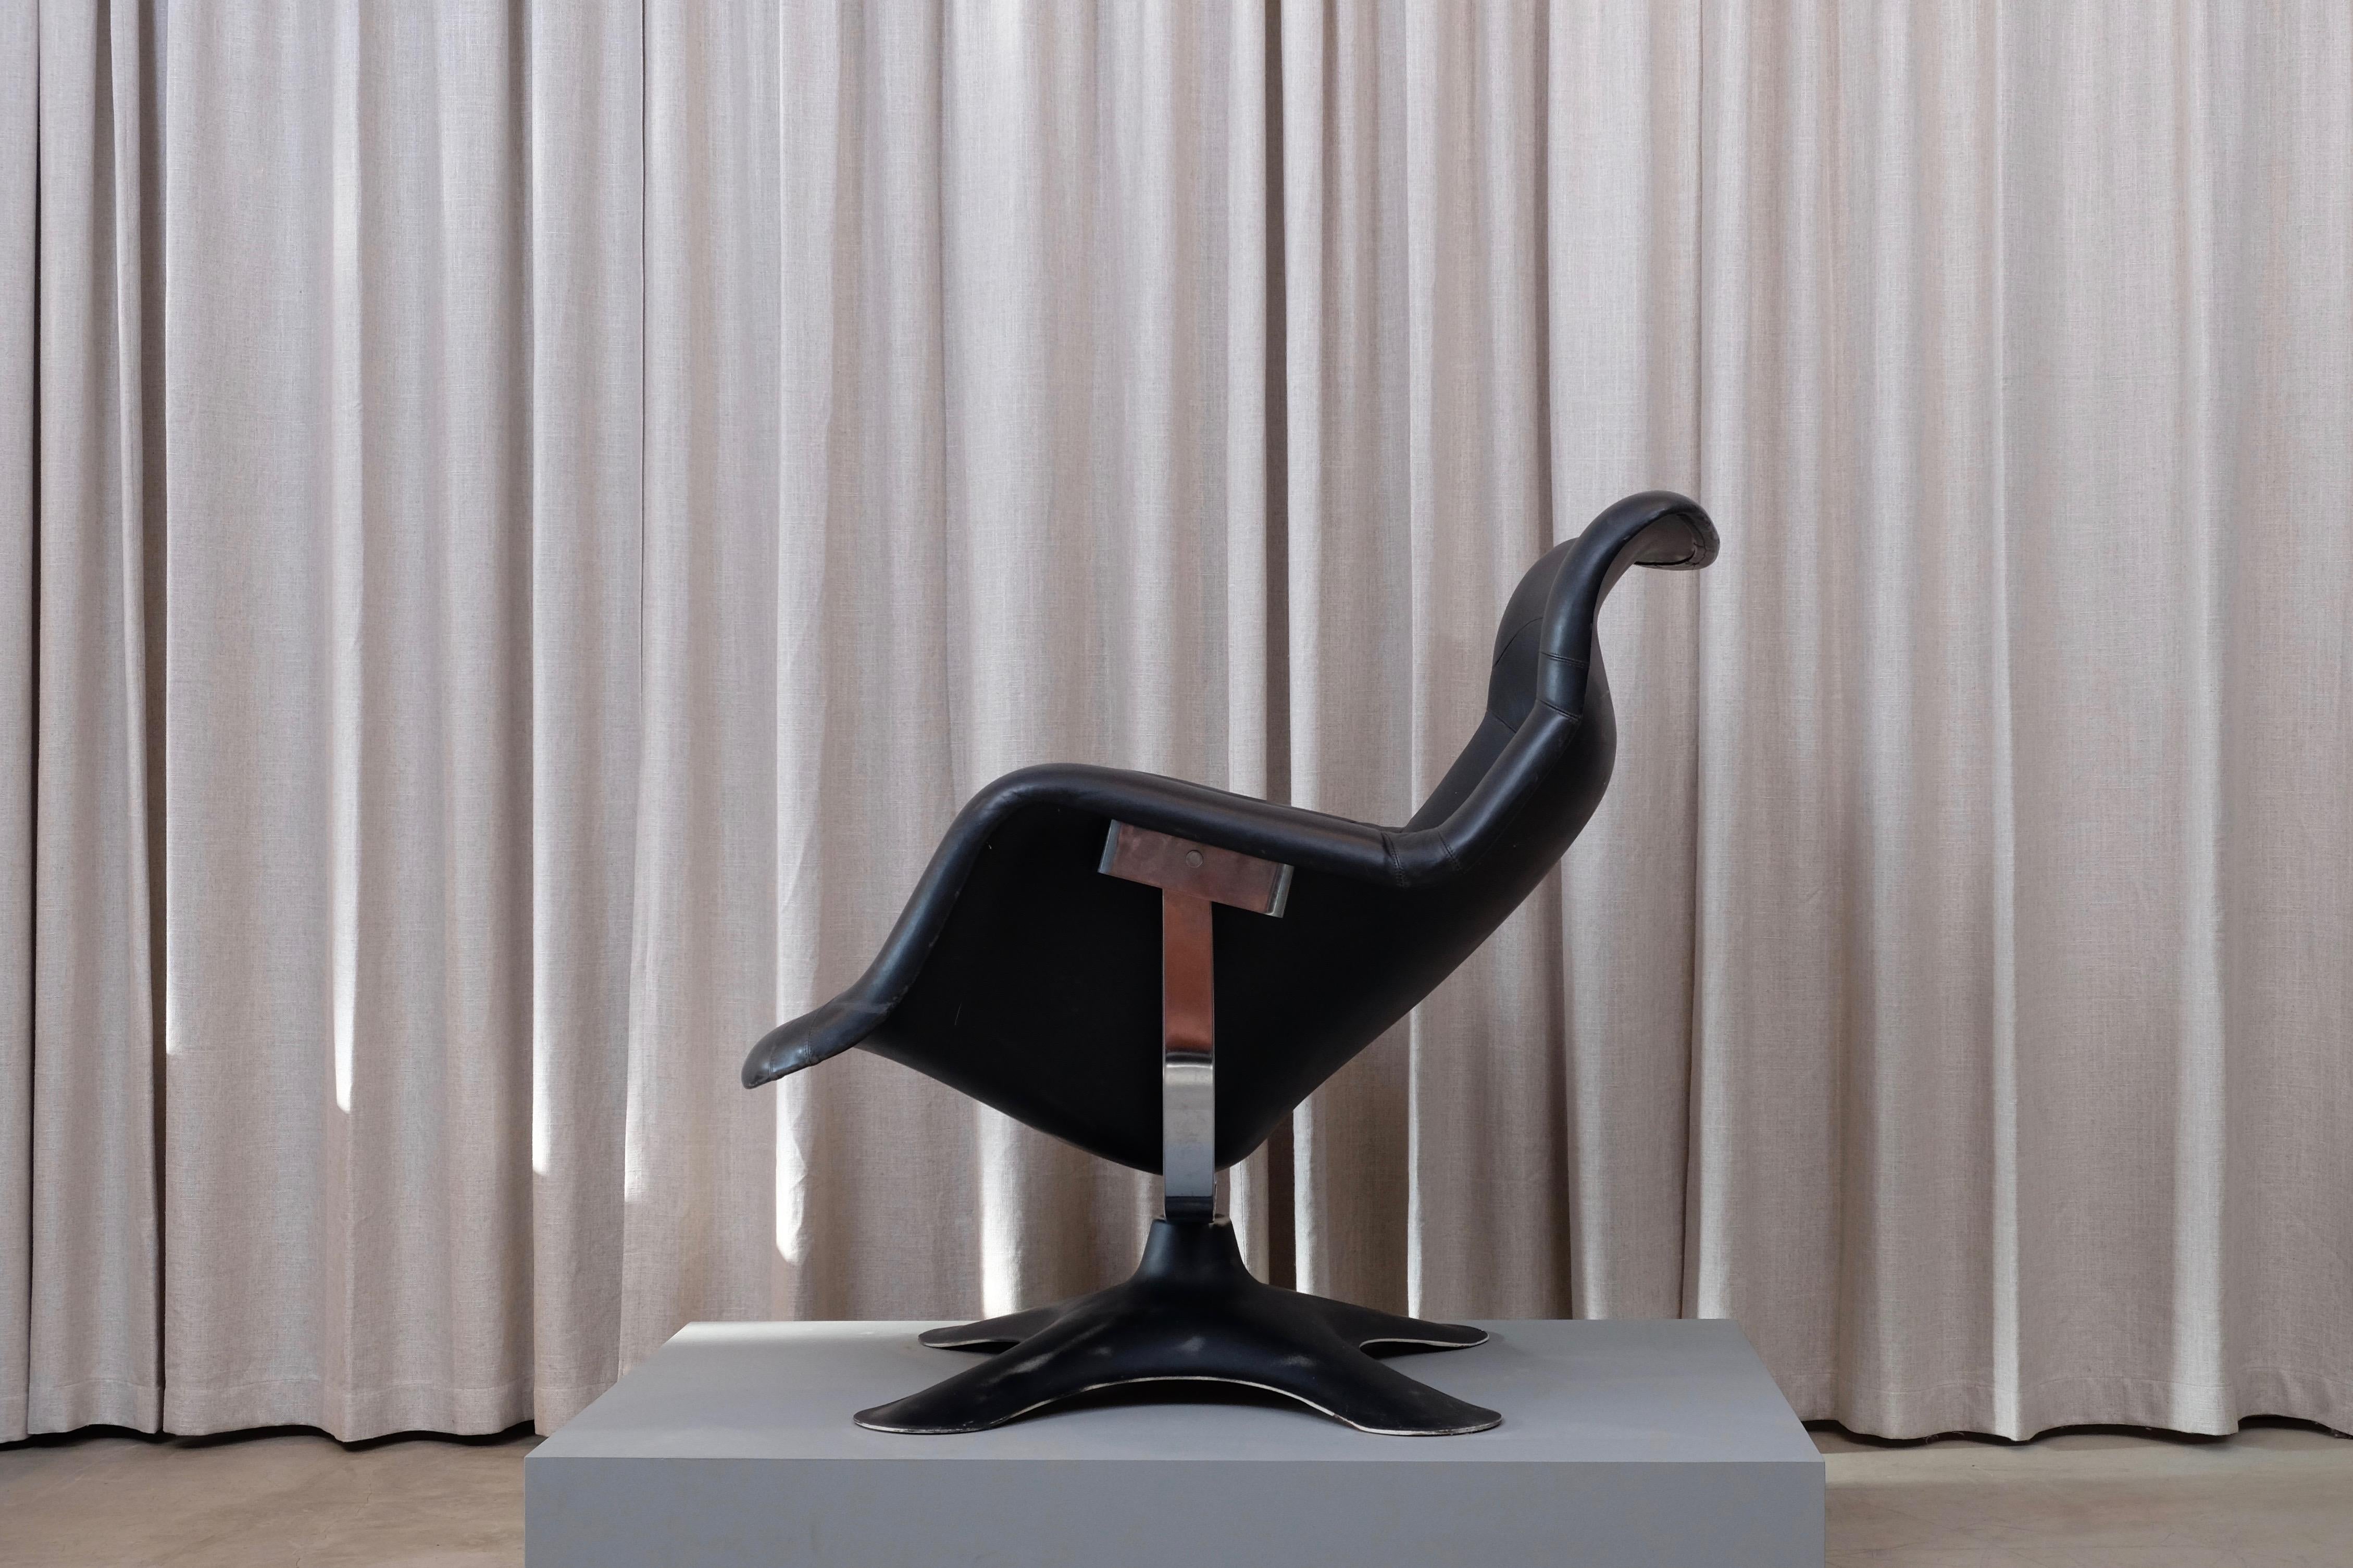 Très recherchée, la chaise longue Karuselli en noir, conçue en 1965 par Yrjö Kukkapuro, fabriquée par Haimi, Finlande, a une coque et une base en fibre de verre. Sellerie exclusive en cuir manufacturé, chrome et fibre de verre en très bon état.